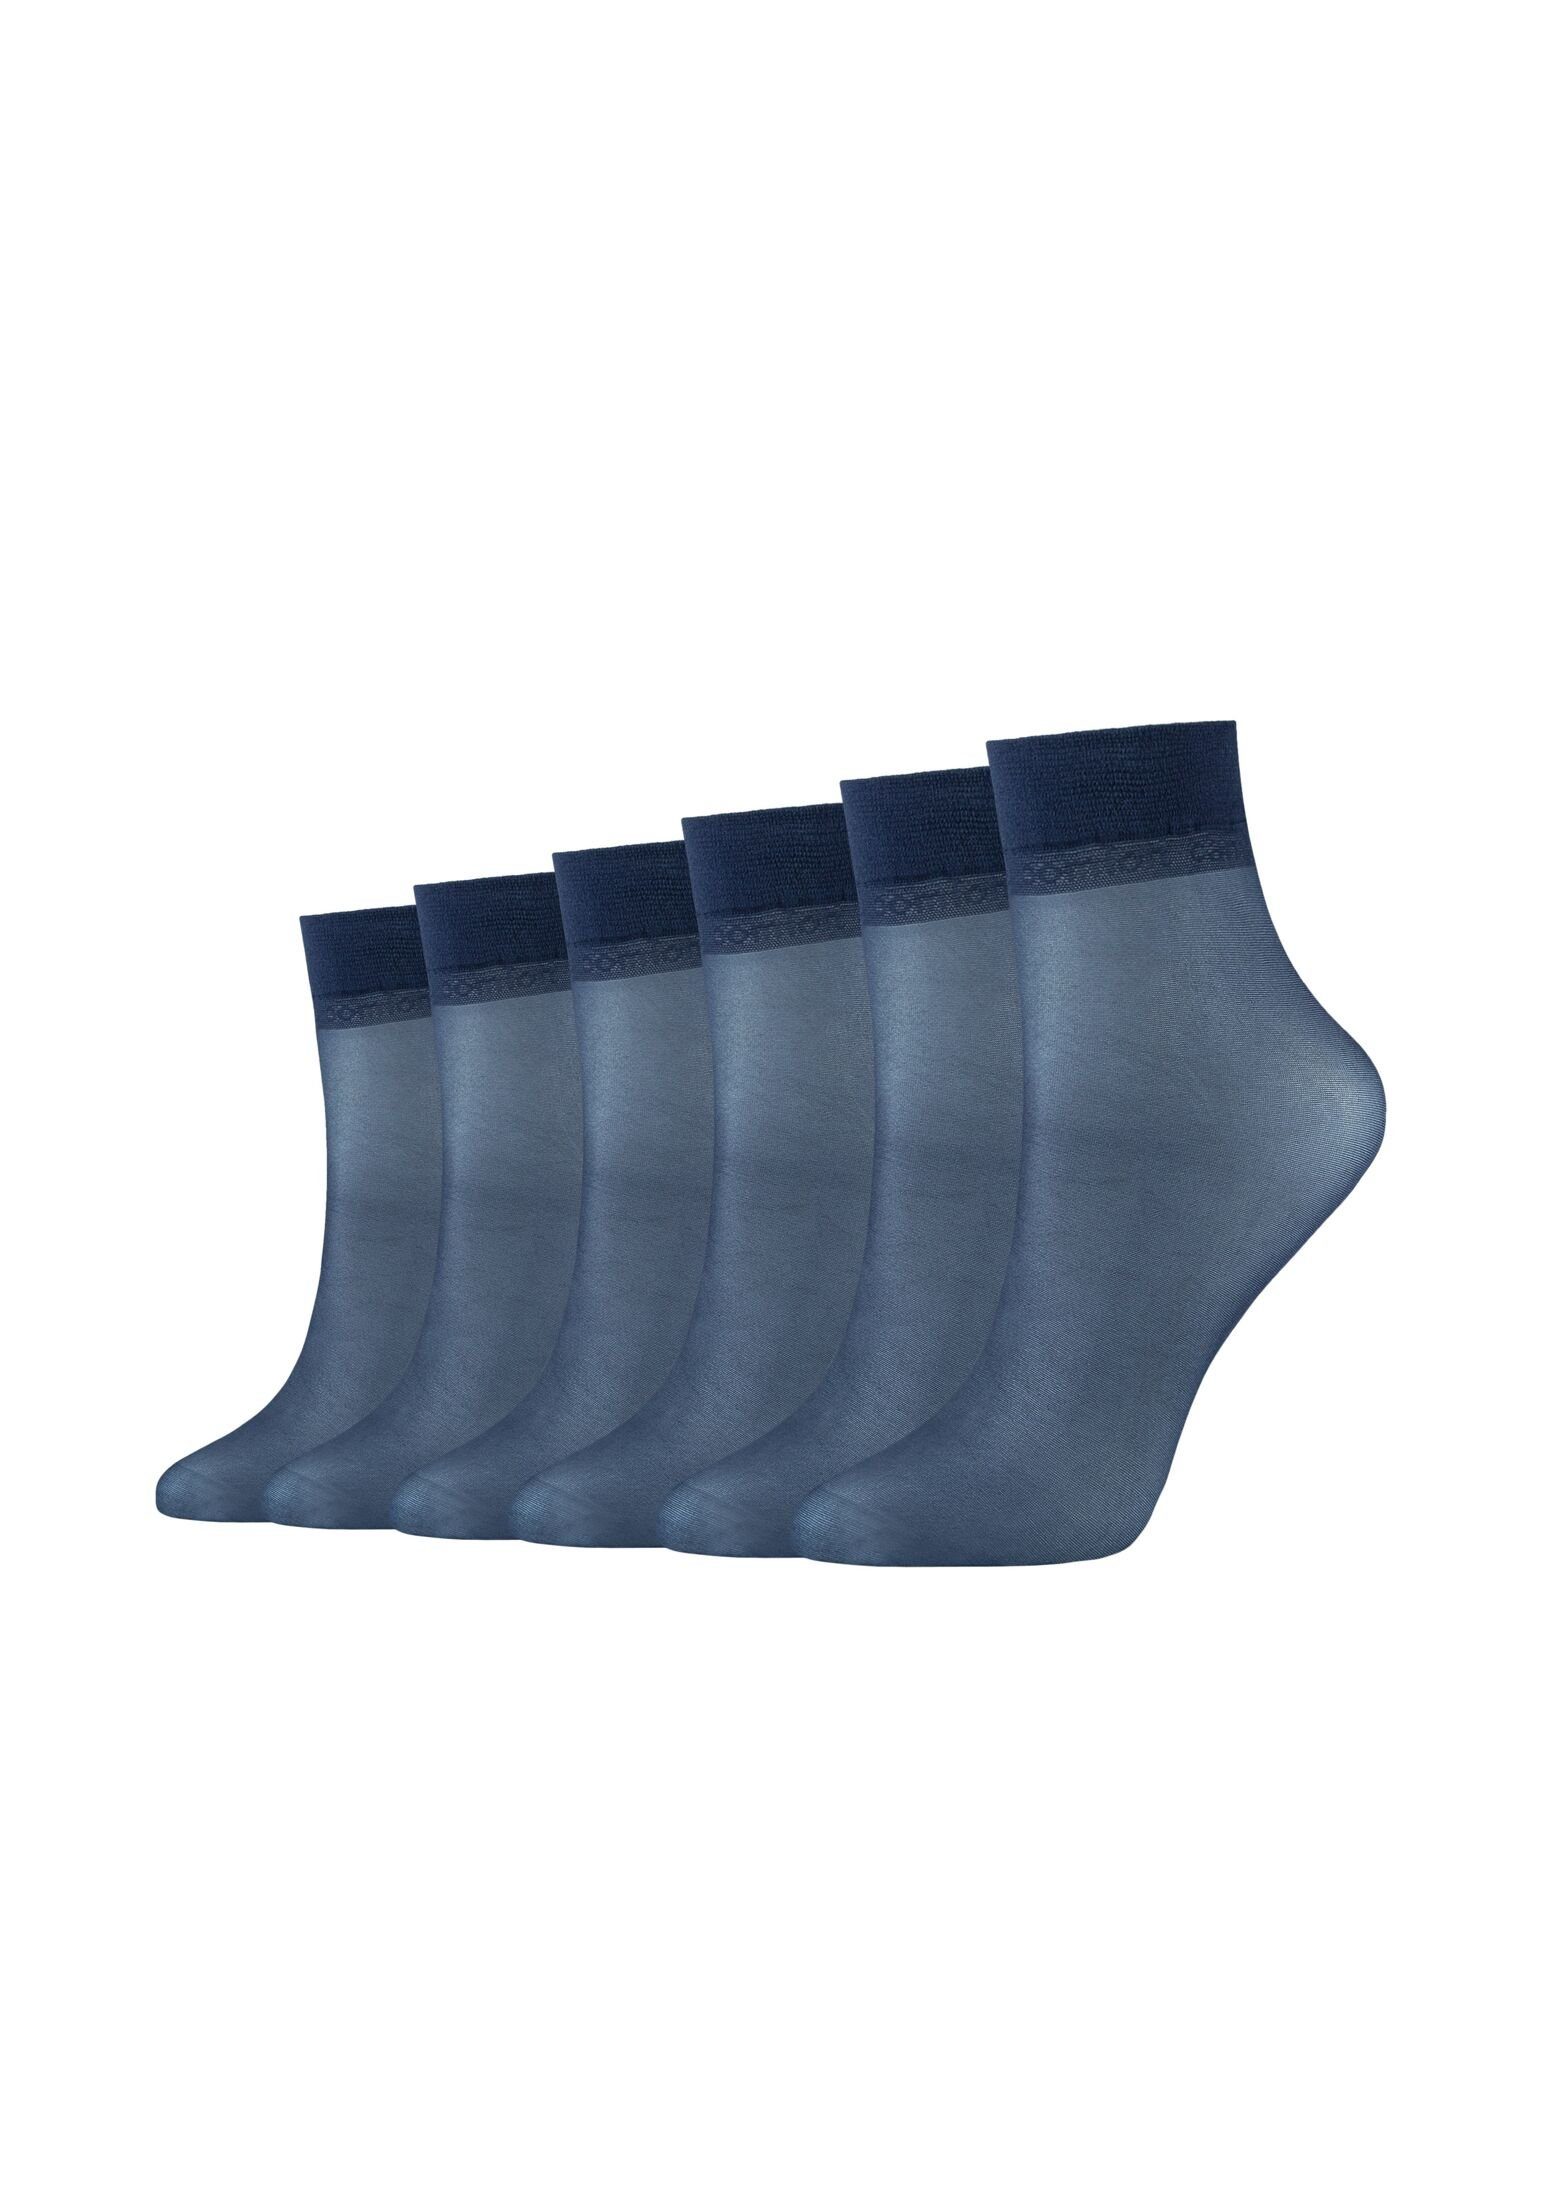 Camano Socken Socken navy 6er Pack